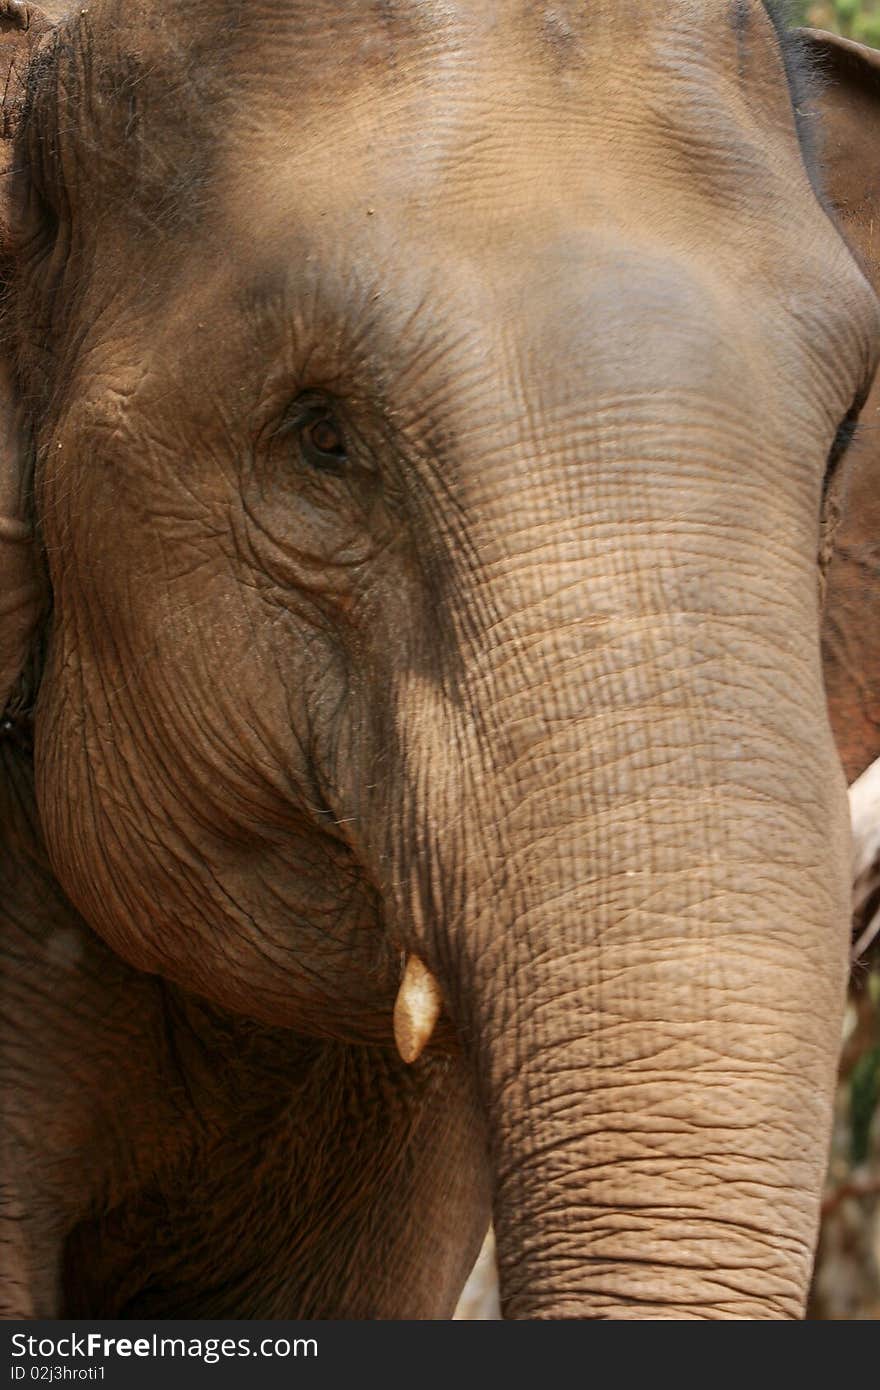 Big Thailand elephant close up